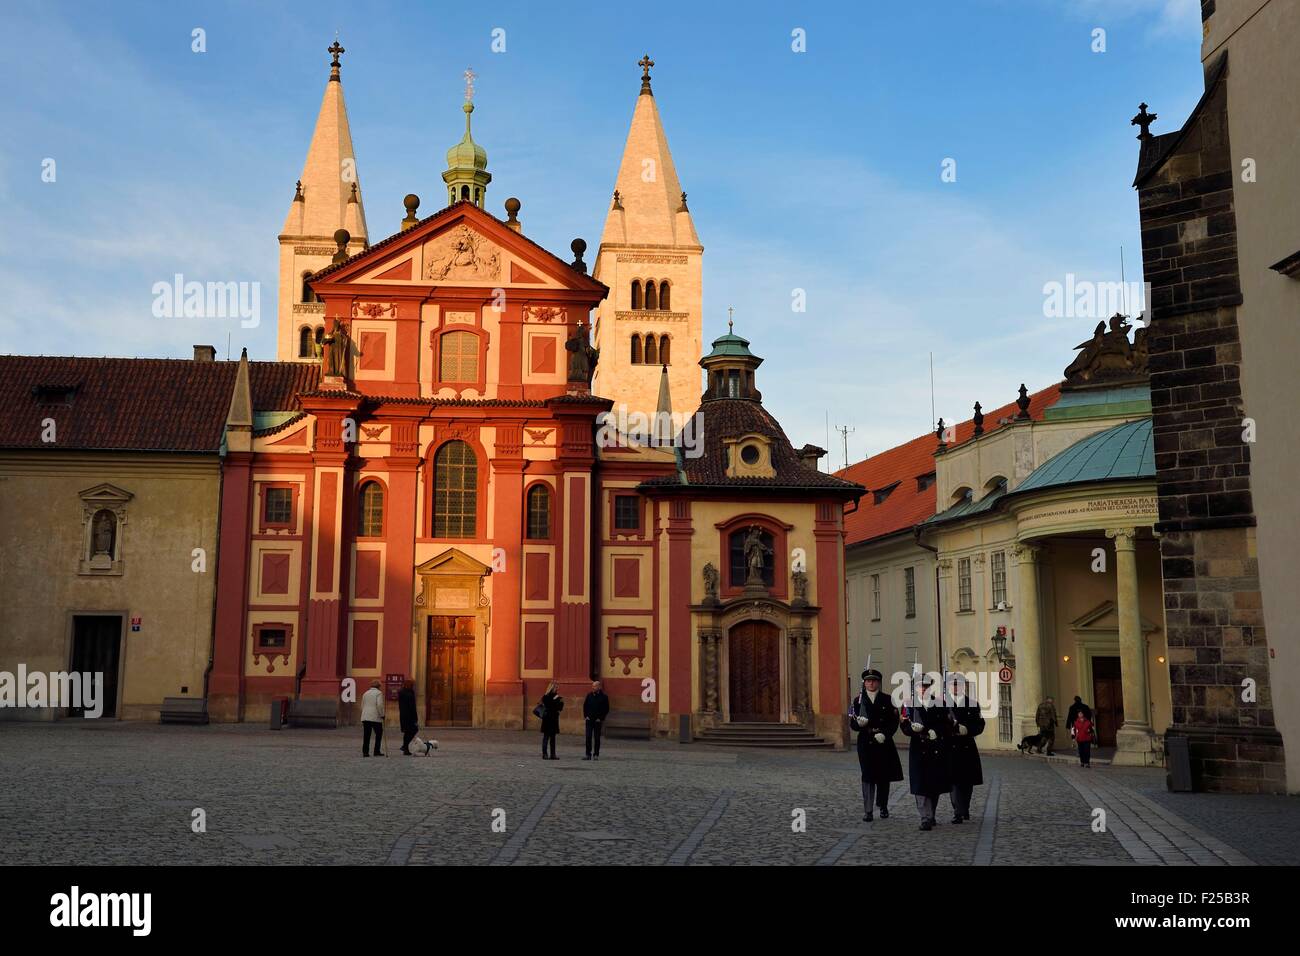 República Checa, Praga, Hradcany (barrio del Castillo), el románico y el Barroco faτade torres de la basílica de St George Foto de stock